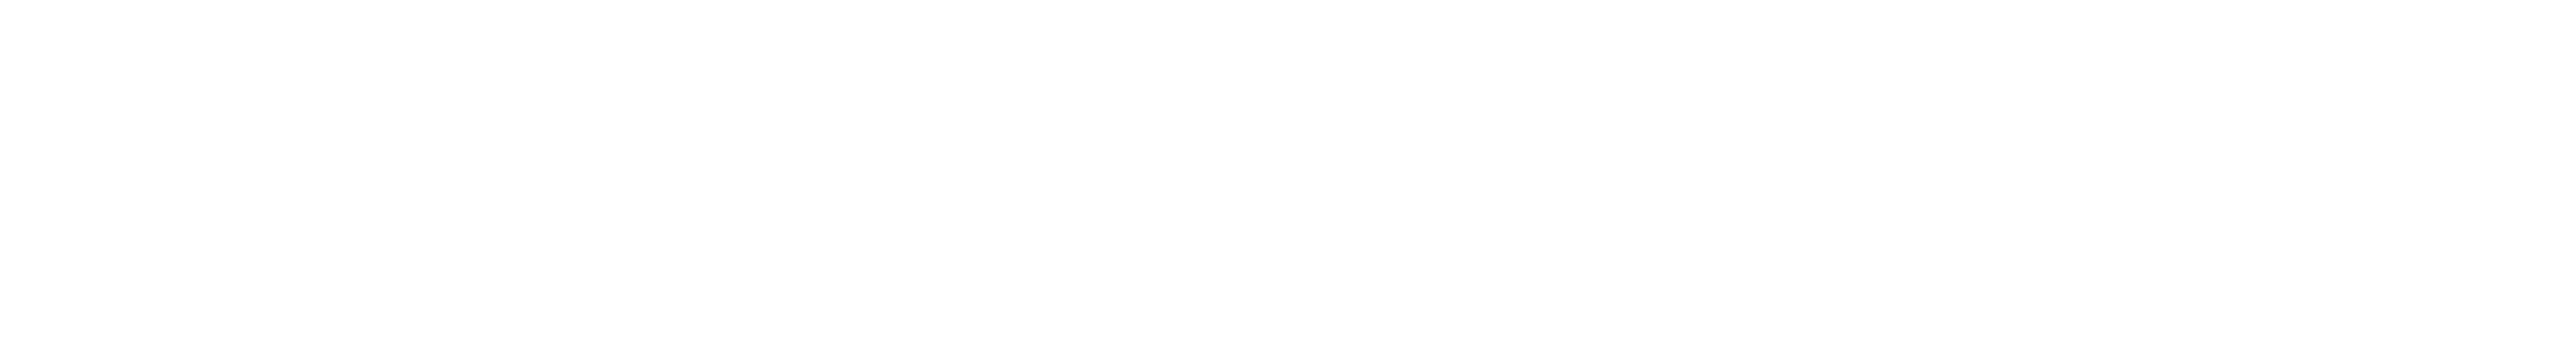 Profit Trust Logo TM White